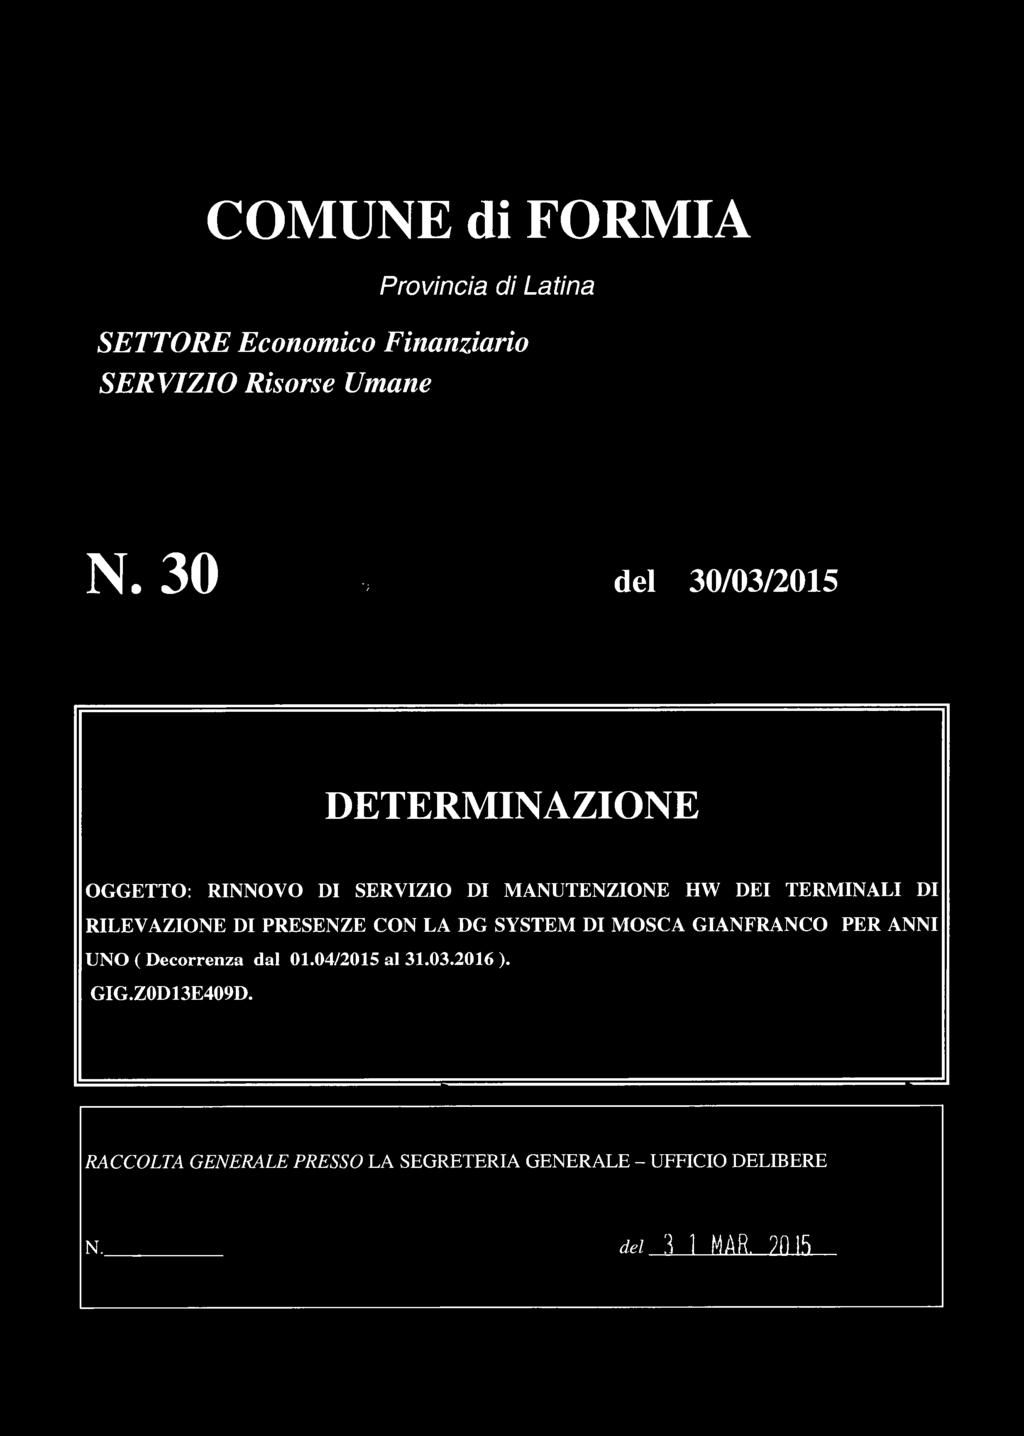 RILEVAZIONE DI PRESENZE CON LA DG SYSTEM DI M OSCA GIANFRANCO PER ANNI UNO ( Decorrenza dal 01.